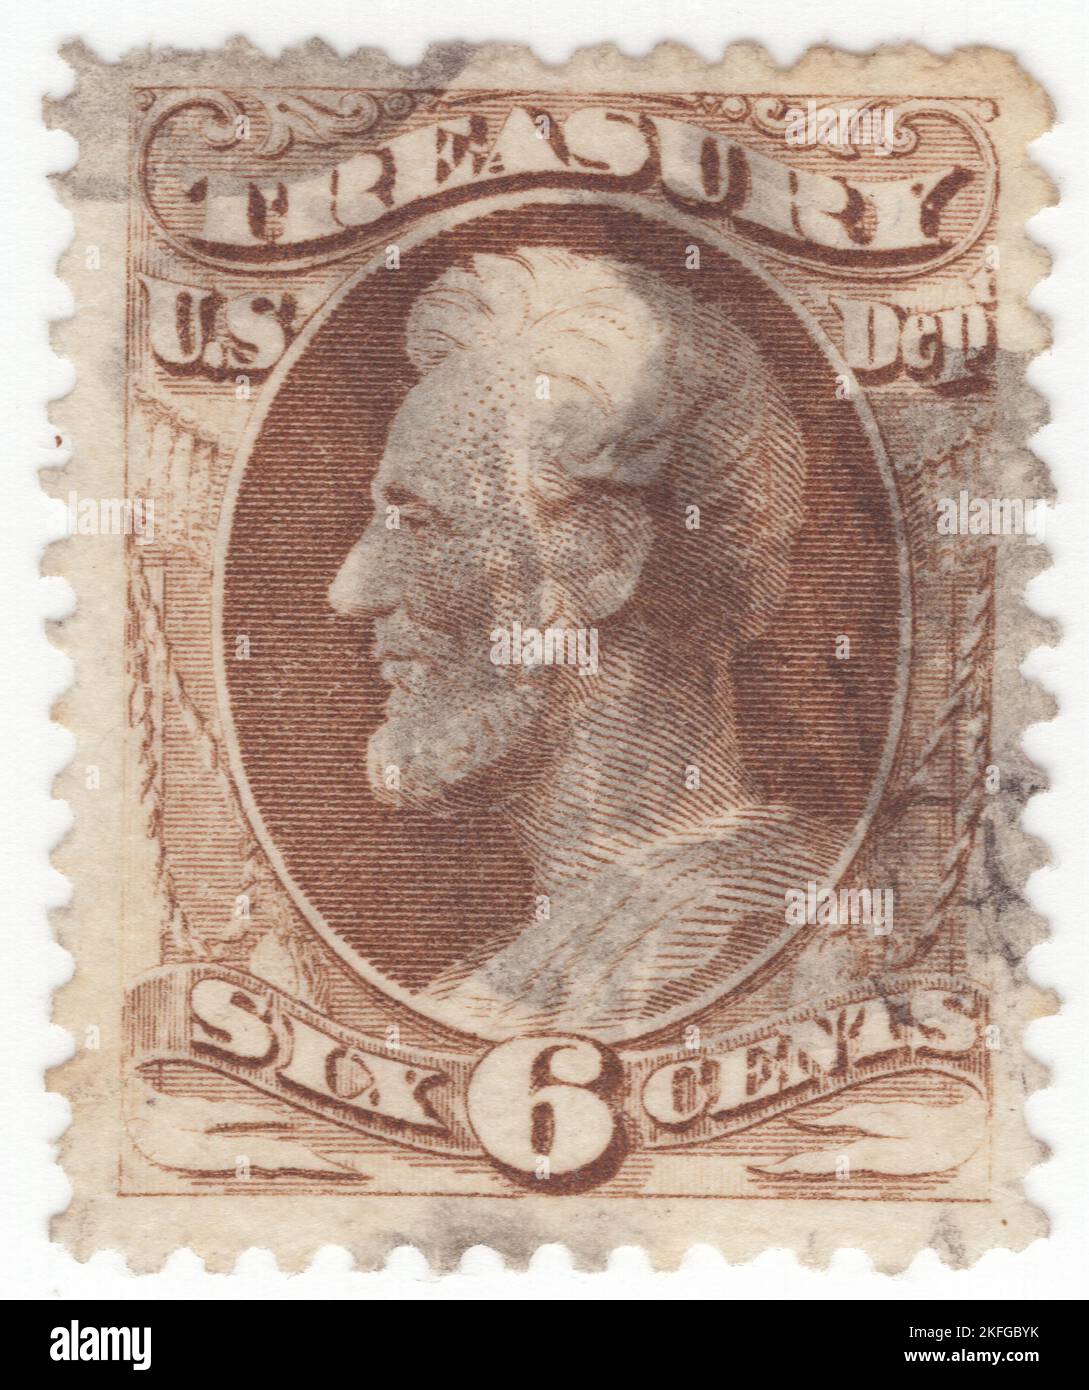 USA - 1879: Eine braune 6 Cent Briefmarke mit Porträt von Abraham Lincoln, dem Präsidenten der USA von 16.. Über dem Rahmen befindet sich ein Banner mit der Aufschrift 'TREASURY'. Das Frankierprivileg, das seit dem 1. Juli 1873 aufgehoben wurde, wurden diese Briefmarken für jeden der Exekutivabteilungen der Regierung zur Vorauszahlung des Postaufpreises in offiziellen Angelegenheiten bereitgestellt. Die ersten strafmarken wurden 1877 zugelassen, und ihre erweiterte Verwendung nach 1879 reduzierte den Bedarf an offiziellen Marken, deren Verwendung am 5. Juli 1884 endgültig aufgehoben wurde Stockfoto